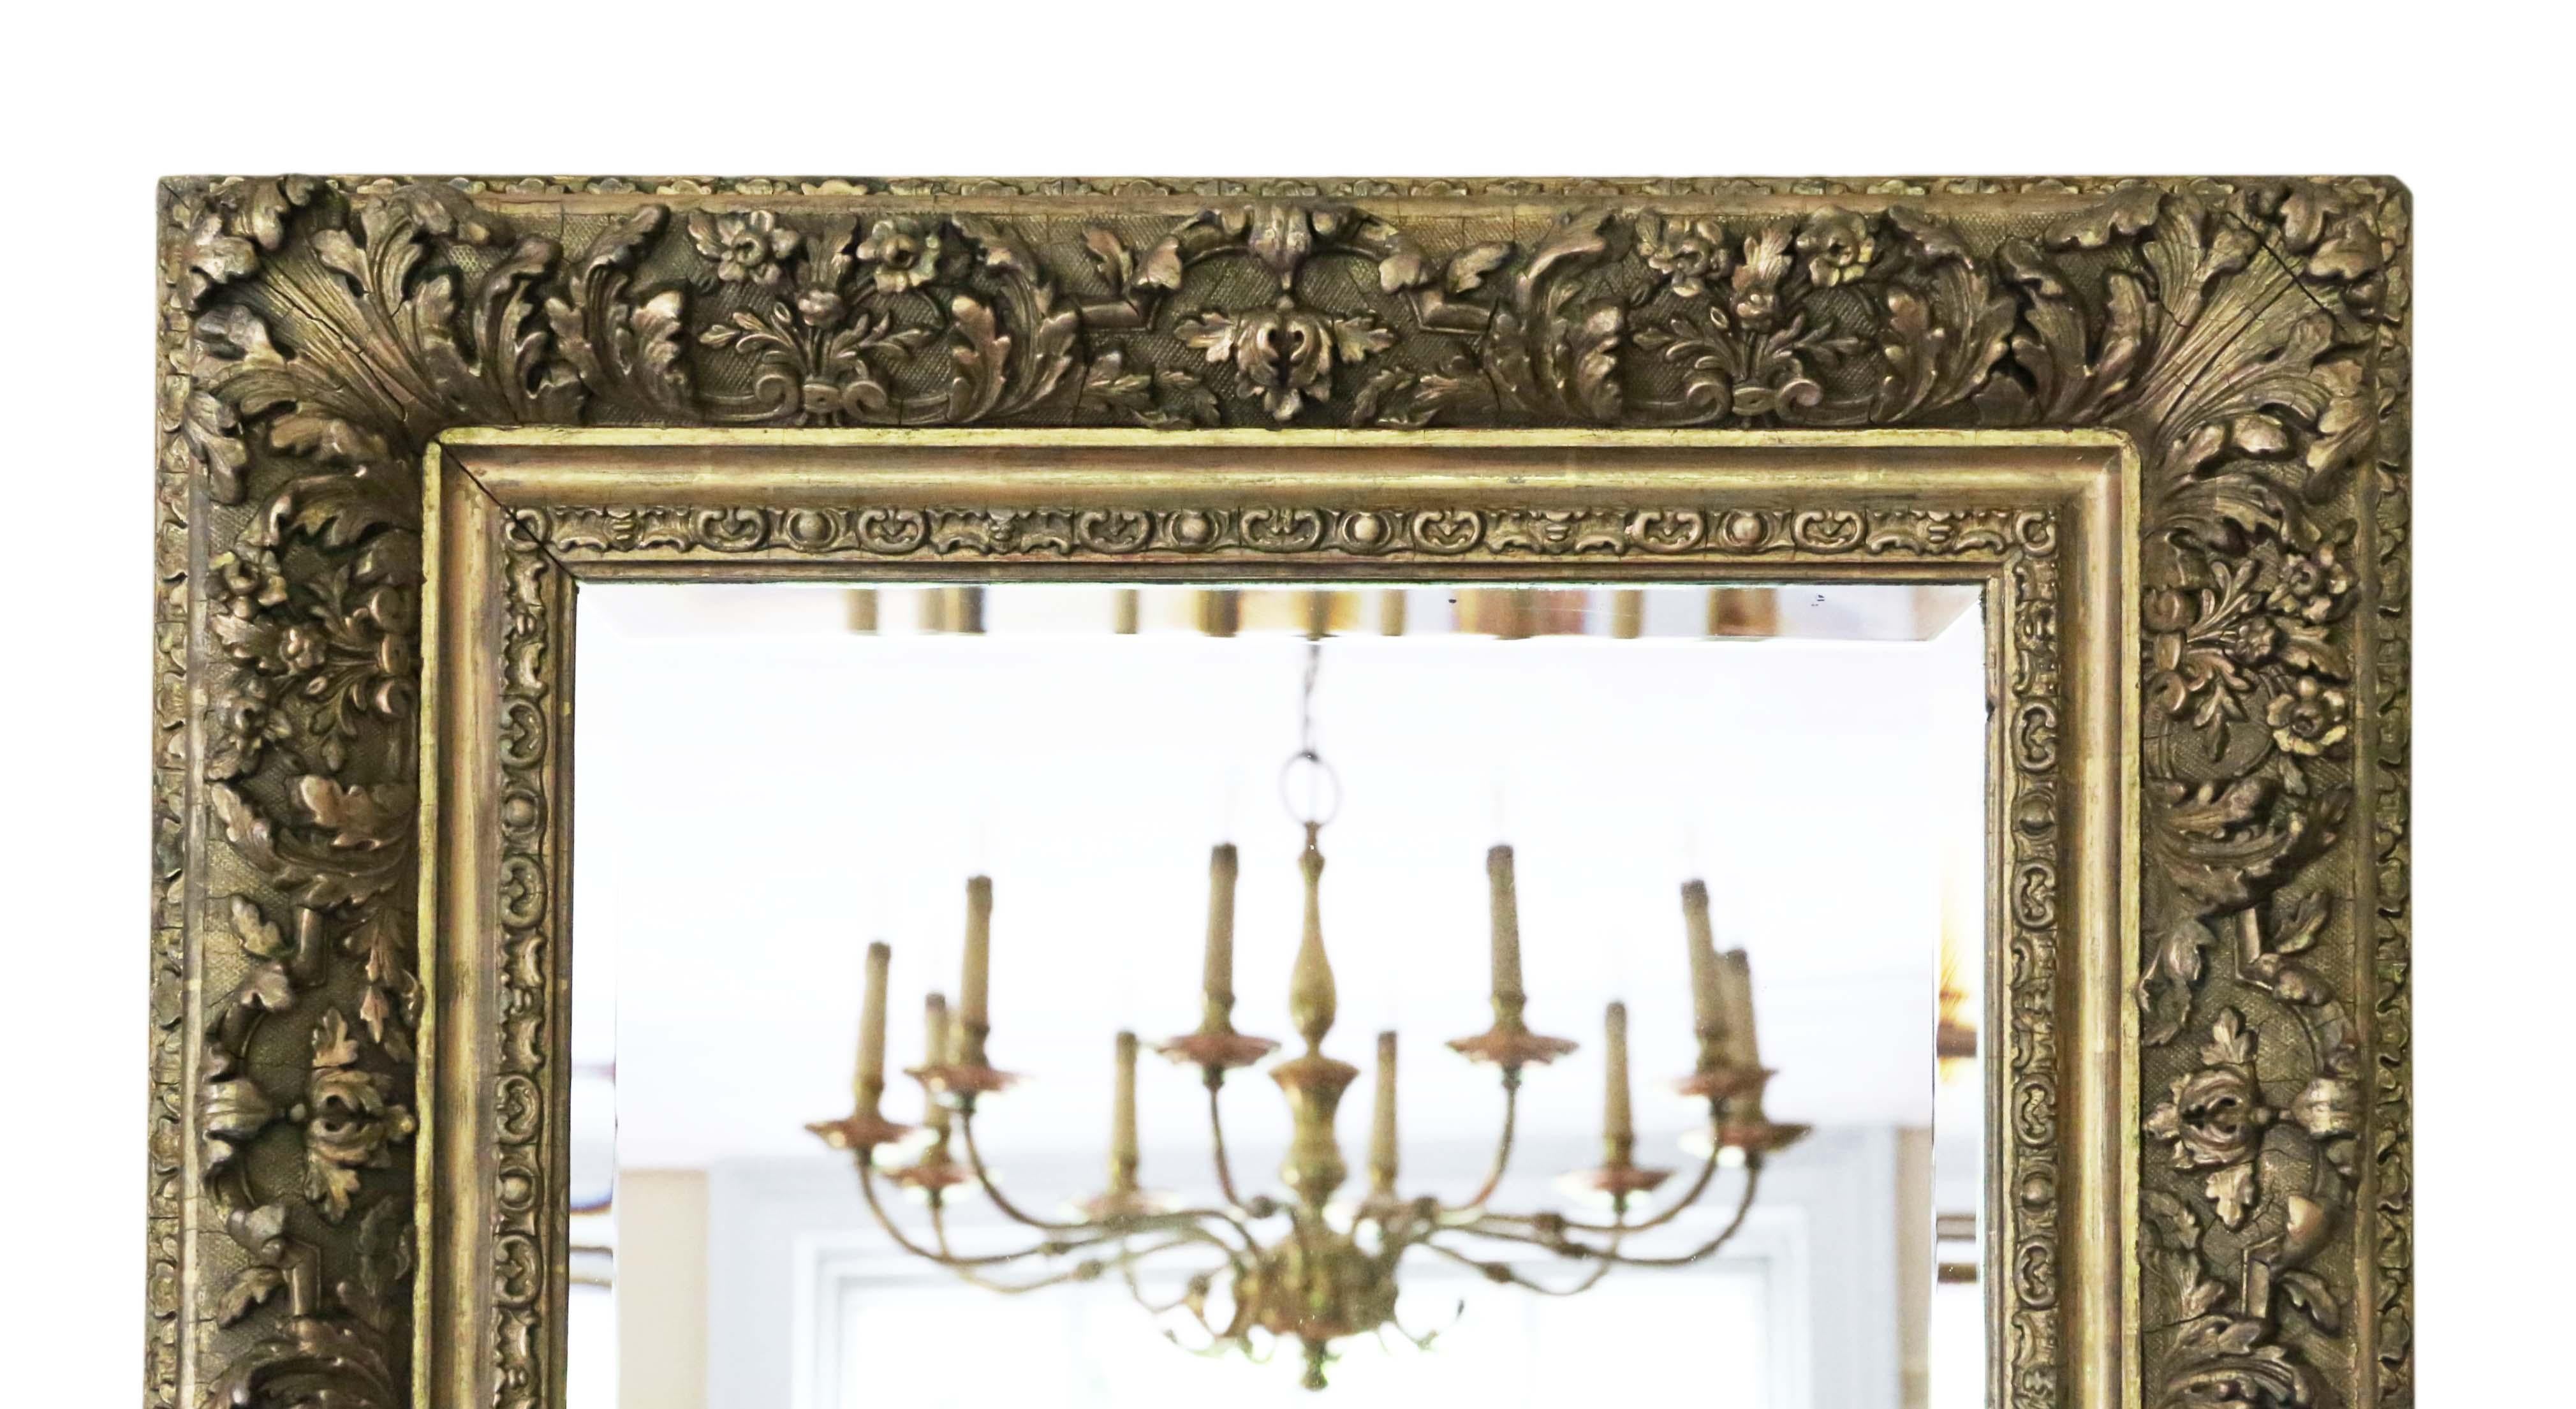 Antiker großer vergoldeter Übermantel-/Wandspiegel aus dem 19. Schöner Charme und Eleganz. Kann im Hoch- oder Querformat aufgehängt werden.

Ein beeindruckender und seltener Fund, der an der richtigen Stelle fantastisch aussehen würde. Keine losen